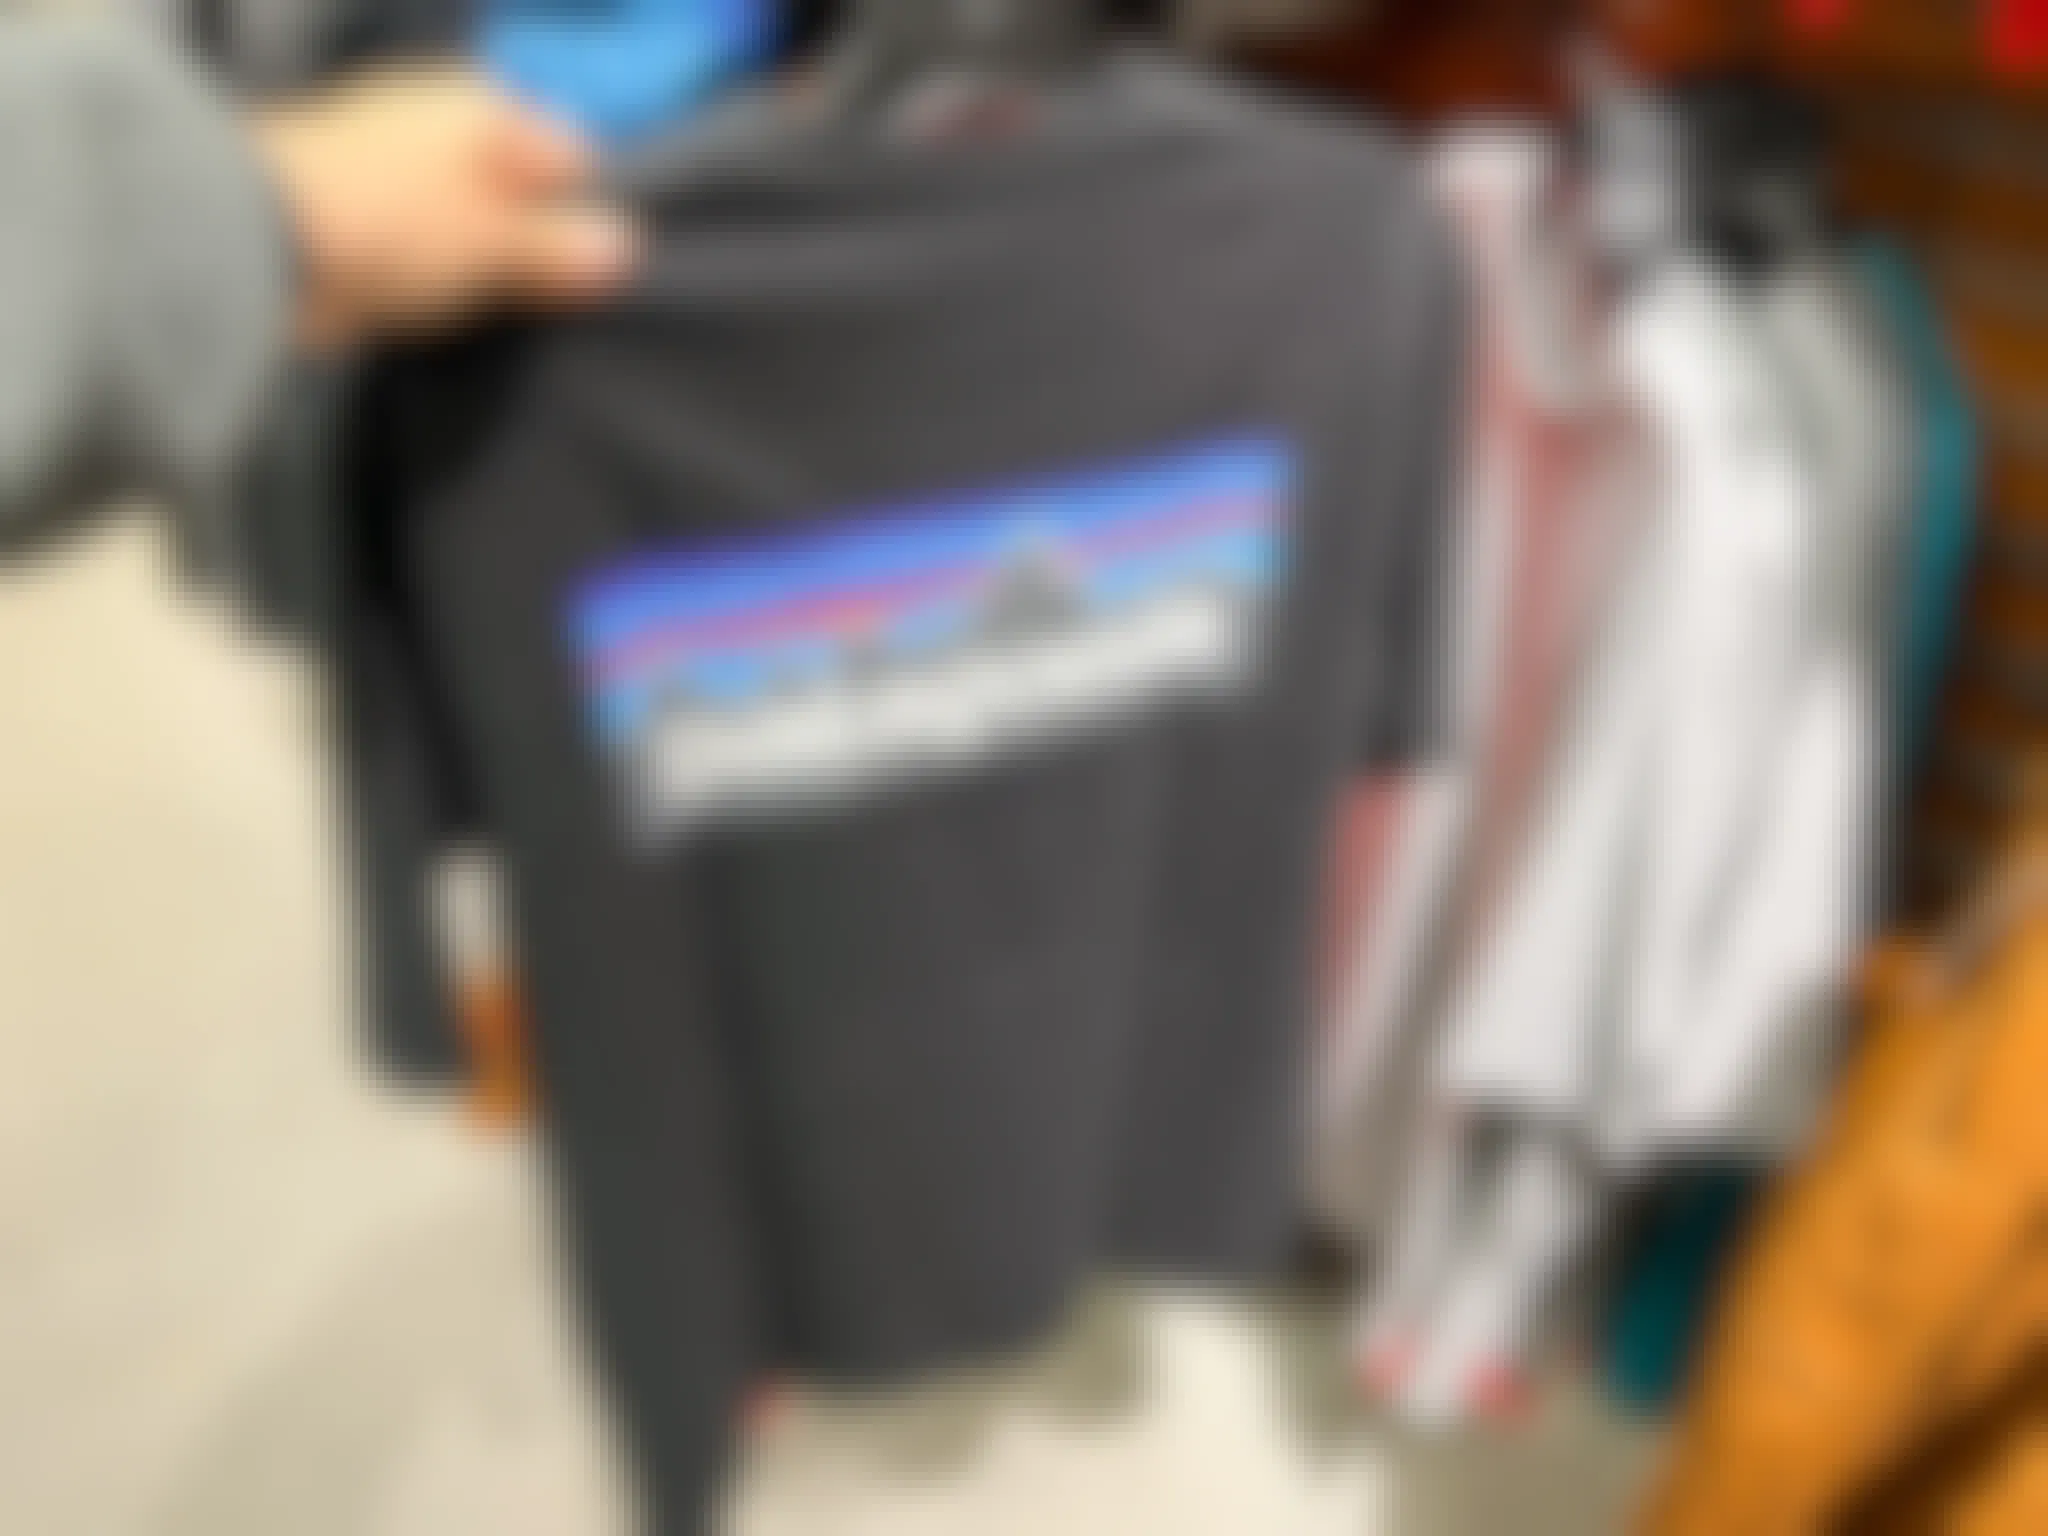 patagonia shirt on hanger